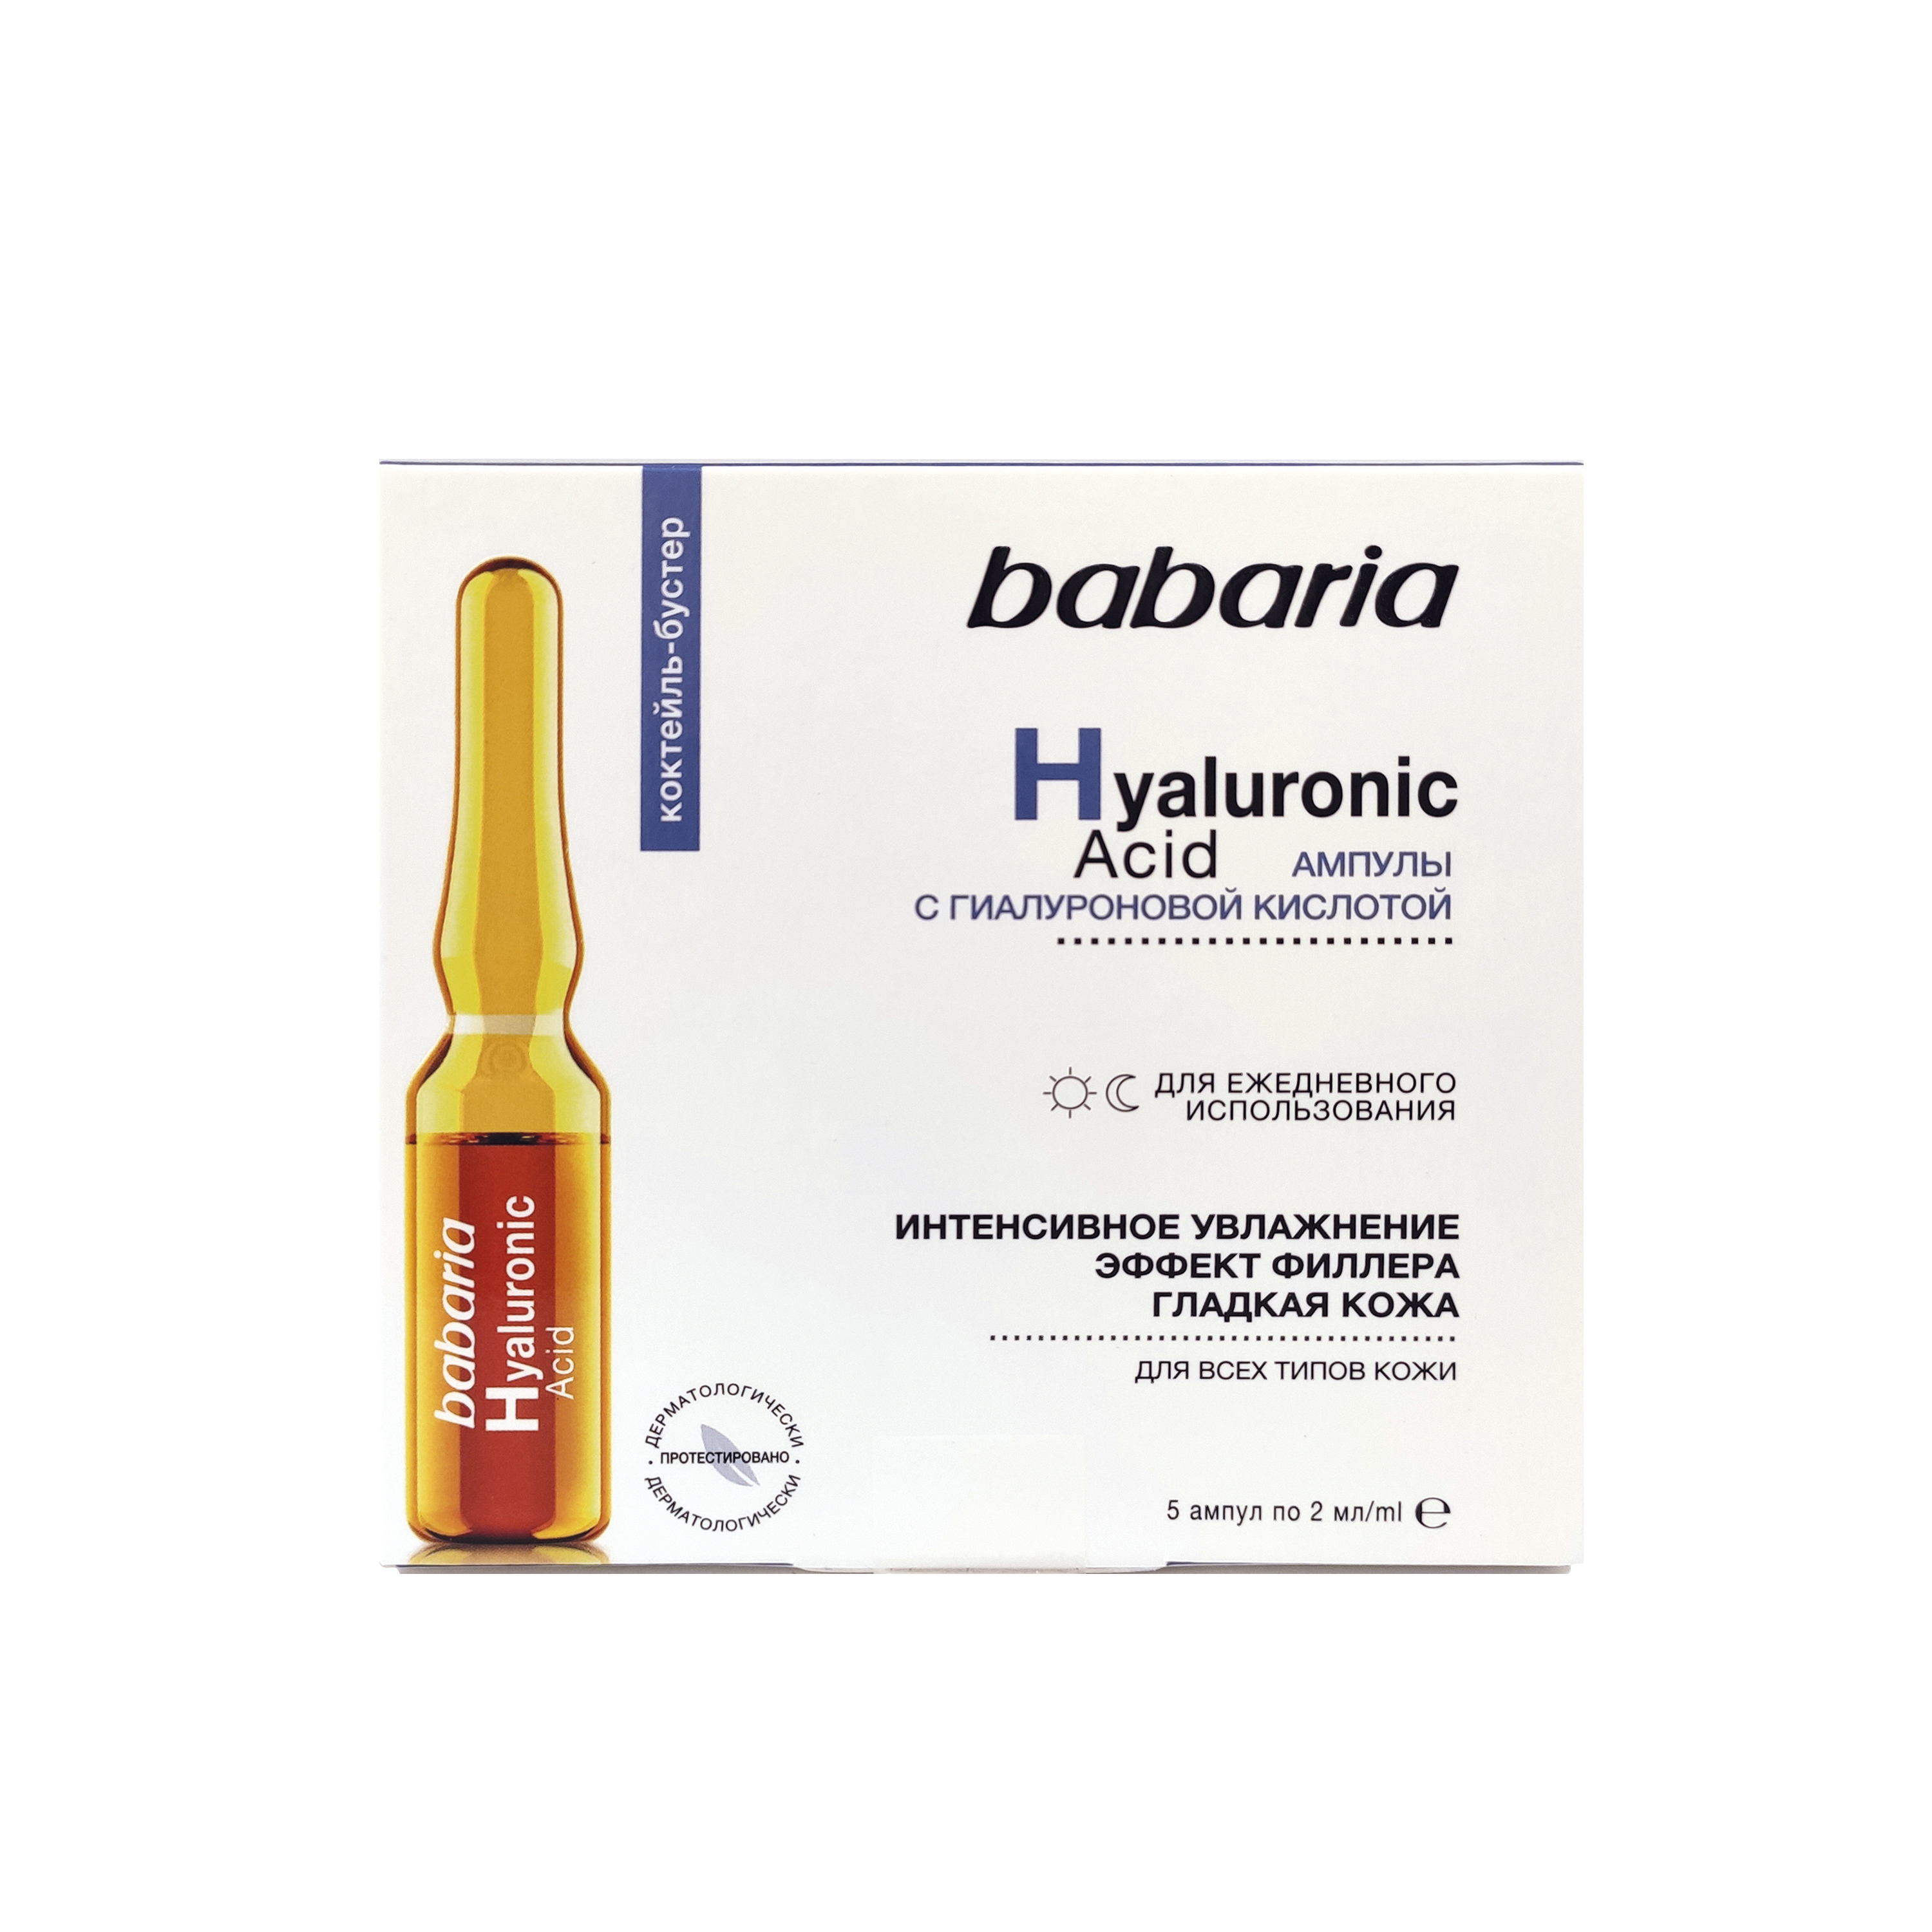 Сыворотка для лица Babaria интенсивное увлажнение, с гиалуроновой кислотой, 10 мл сыворотка для лица babaria с антиоксидантным коктейлем vitamin c в ампулах 2мл 5шт